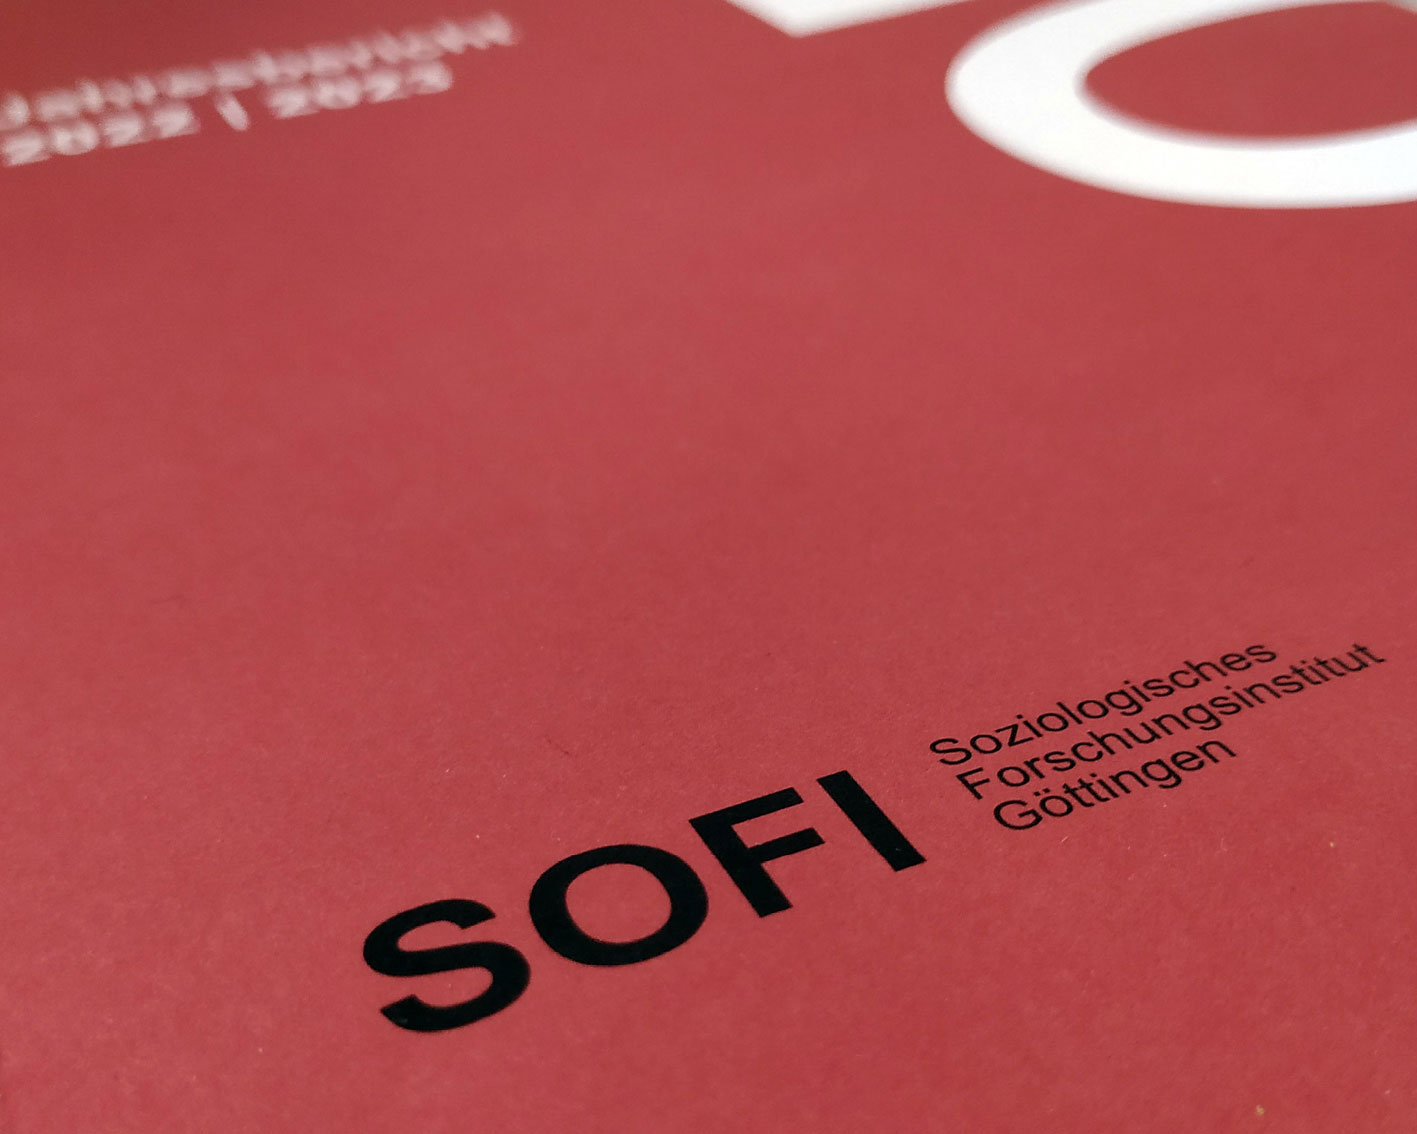 SOFI-Logo auf der Titelseite des Jahresberichts